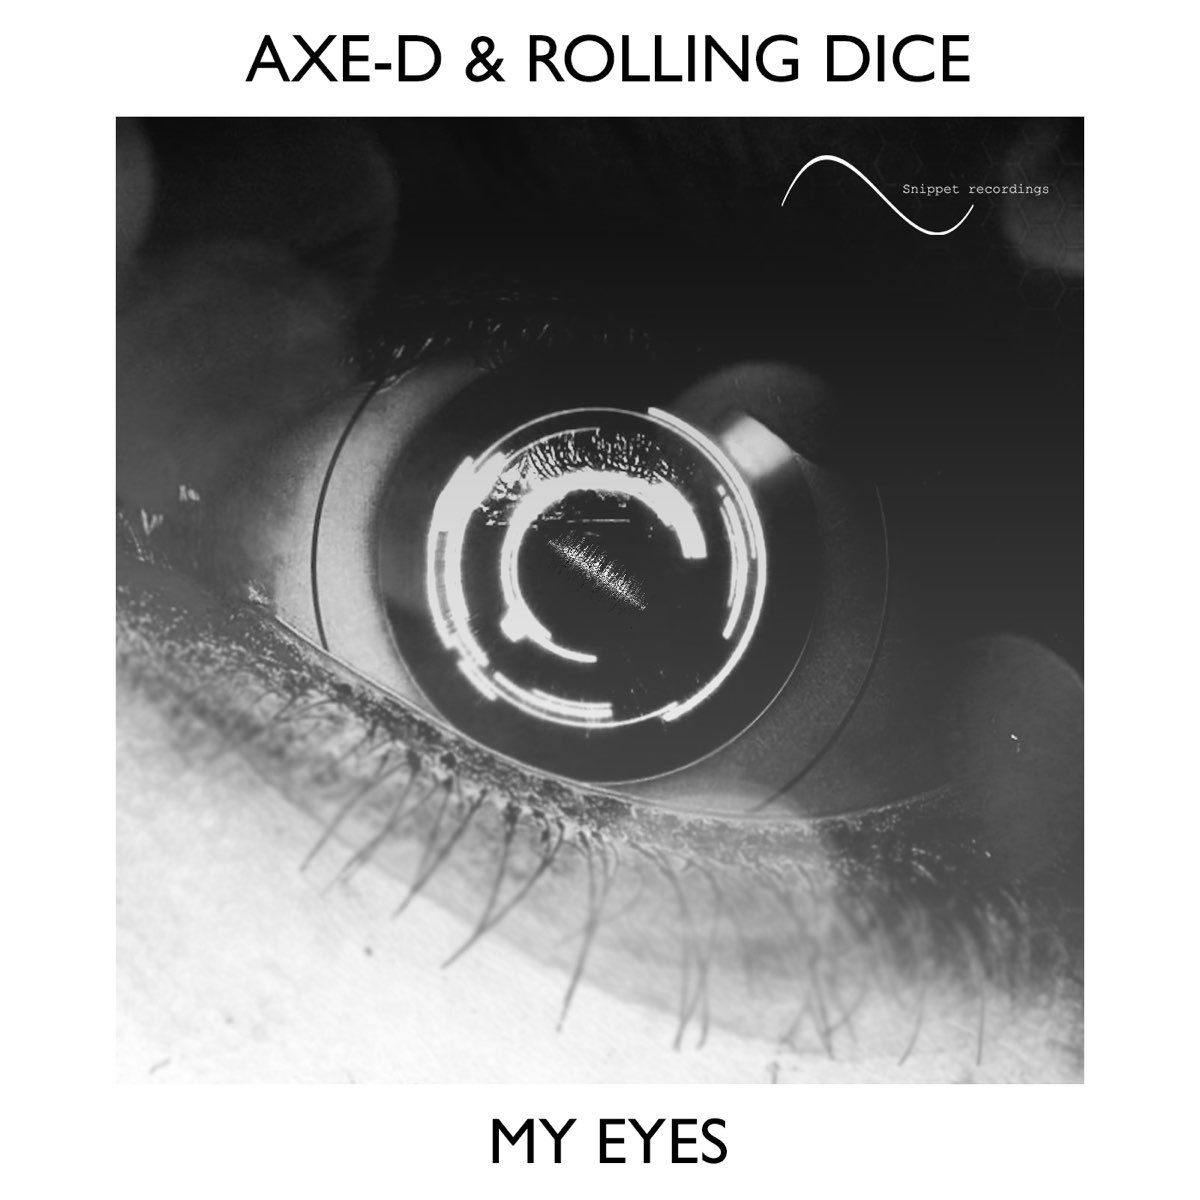 Песня rolled up. Обложка для песни dices. D-Axe песни. Песенка Rolling dice. Roll my Eyes.